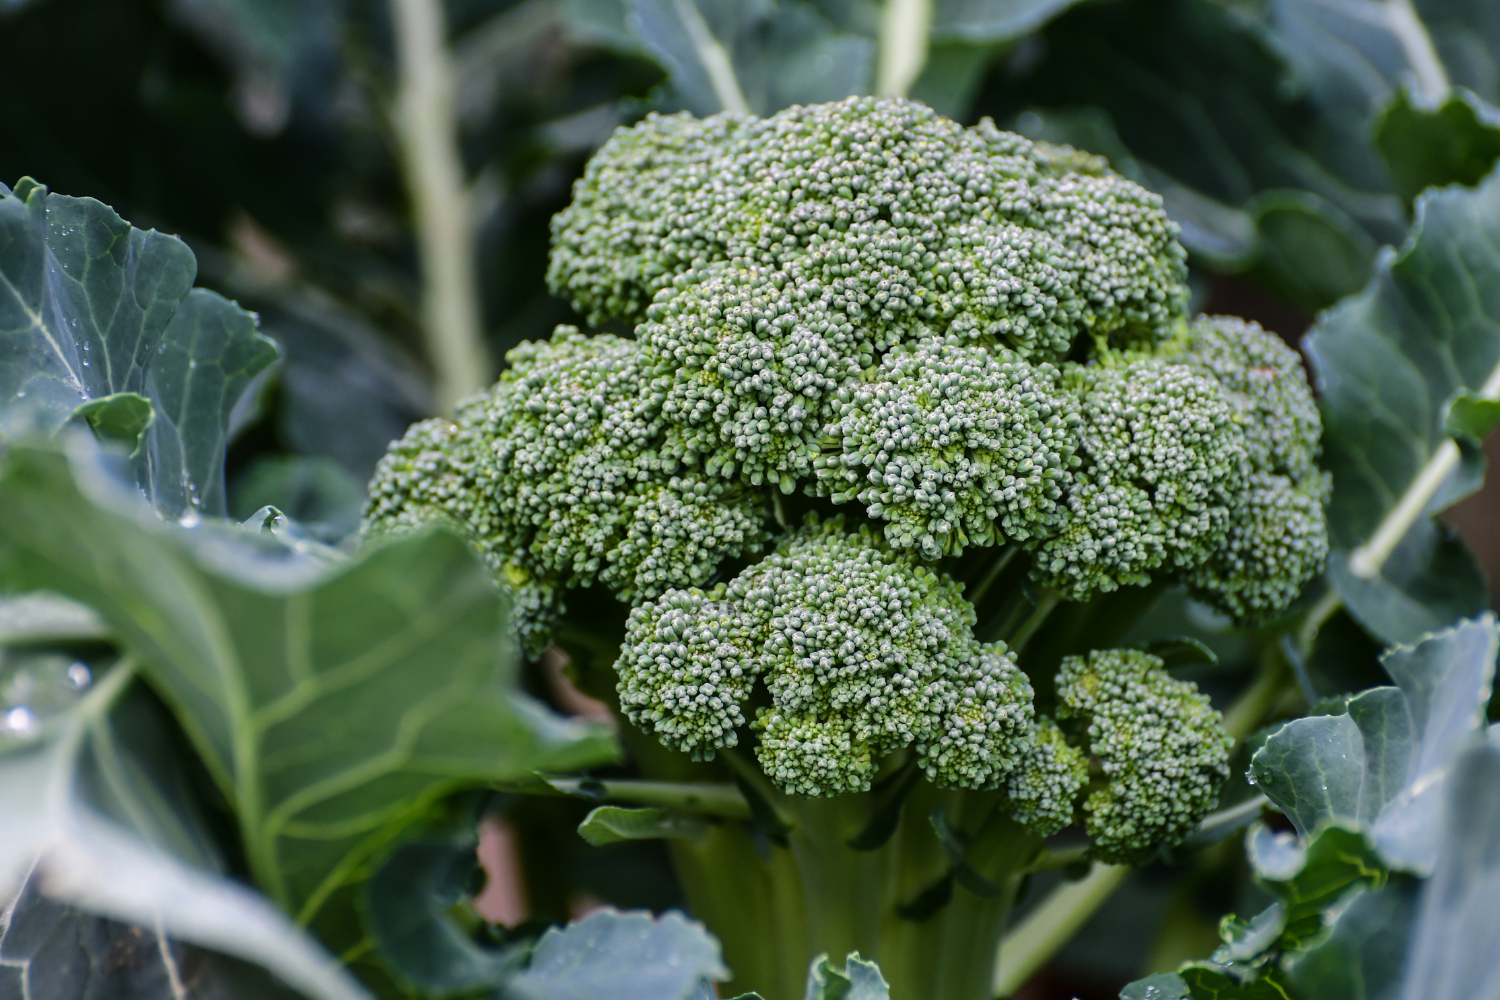 Head of broccoli growing in garden vegetable bed